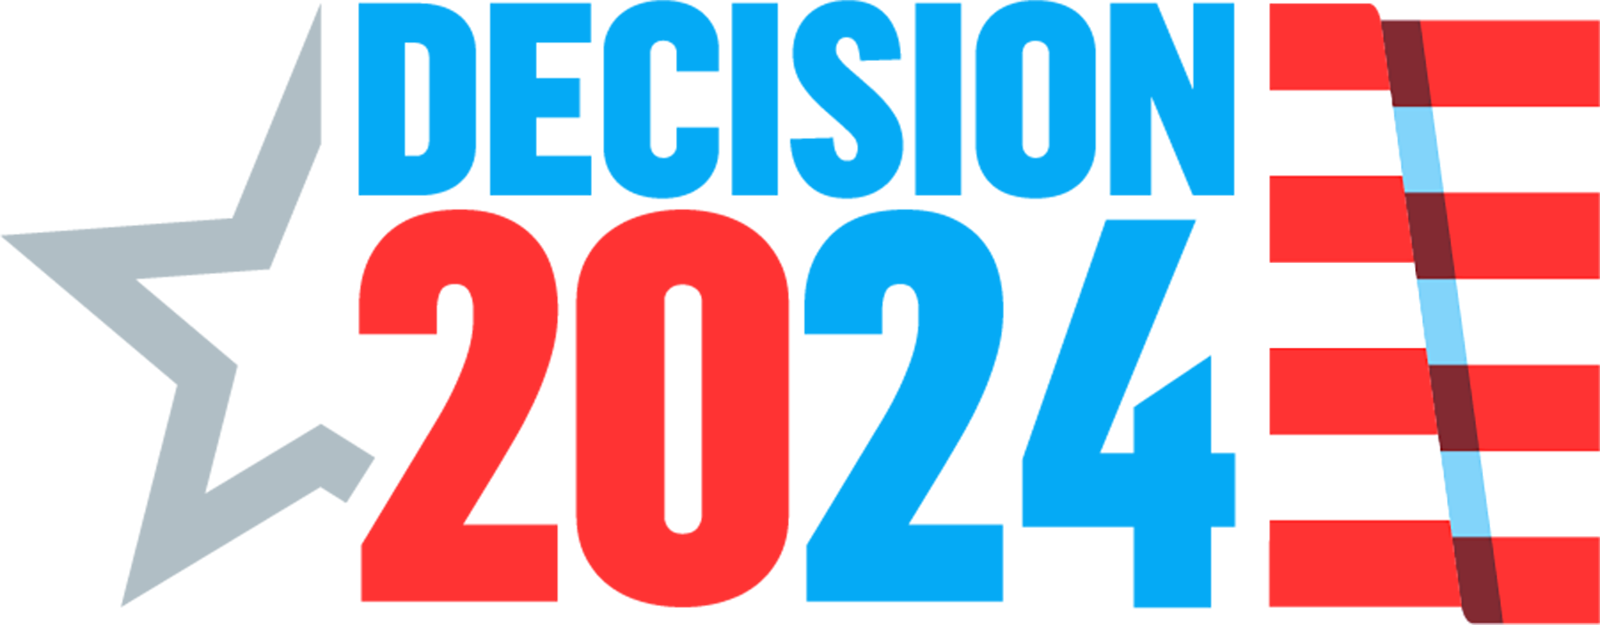 Decision 2024